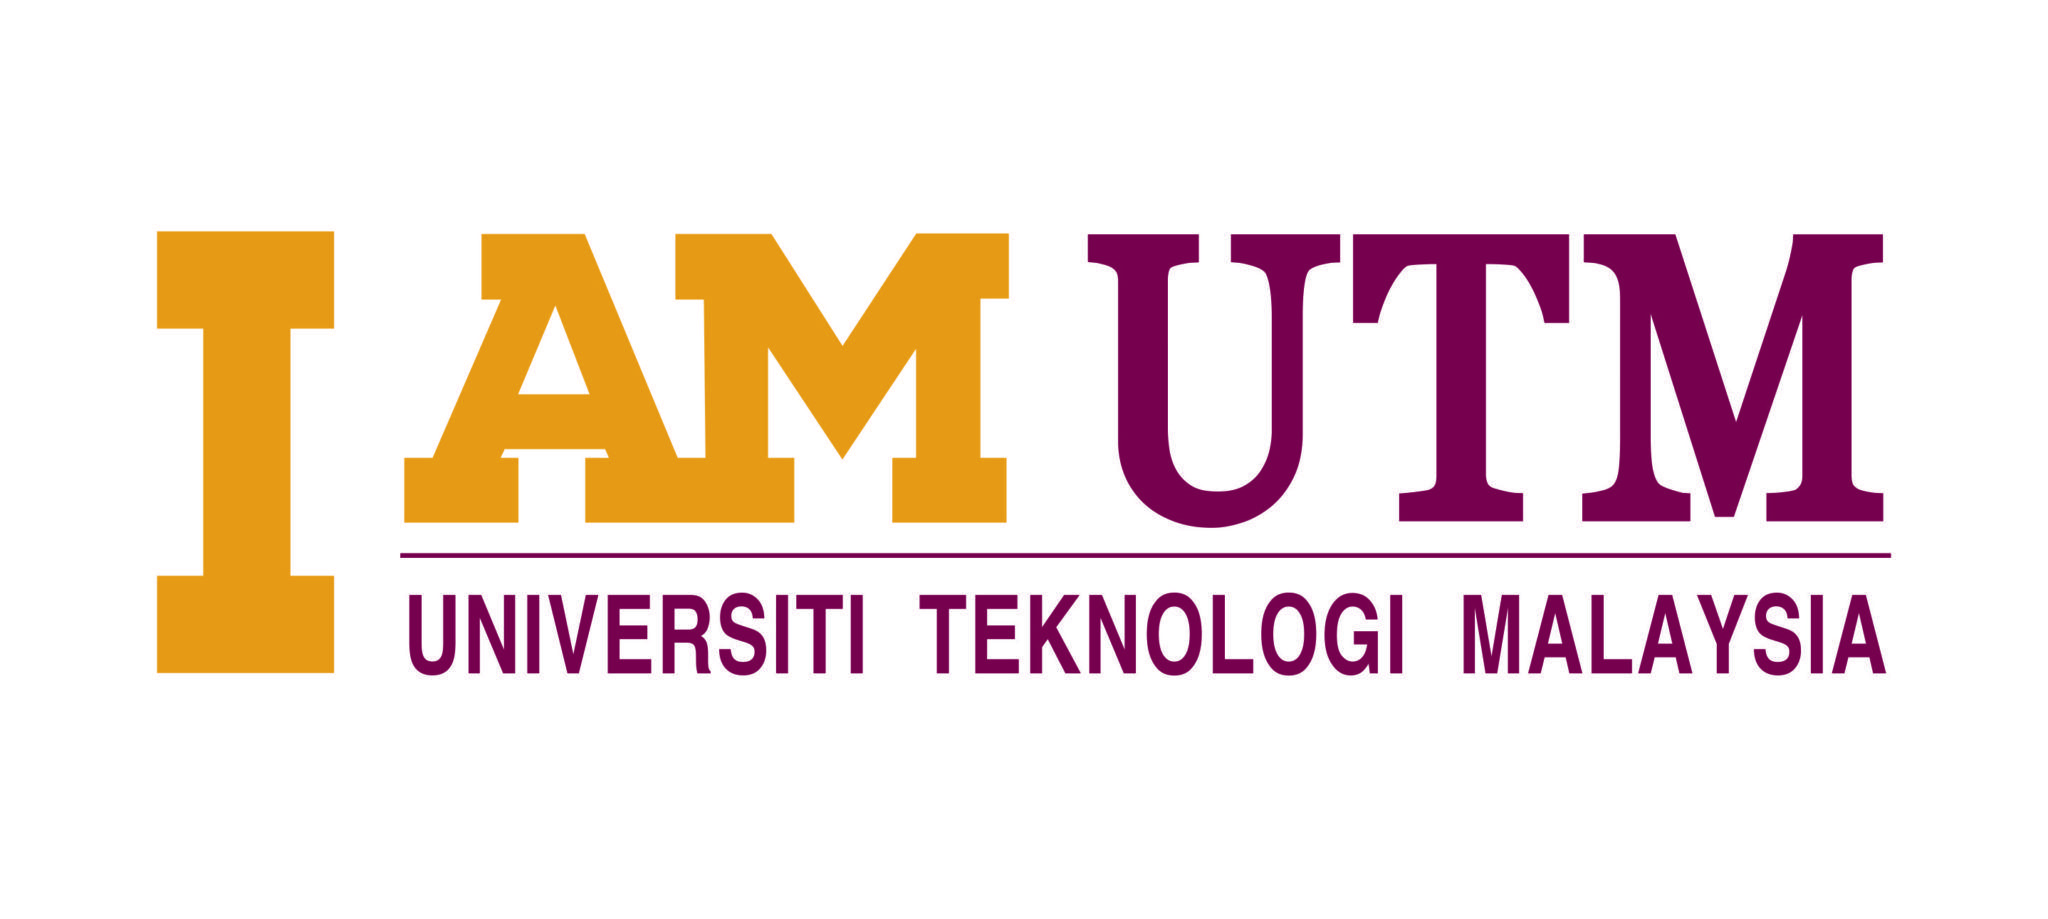 UTM Logo - I am UTM